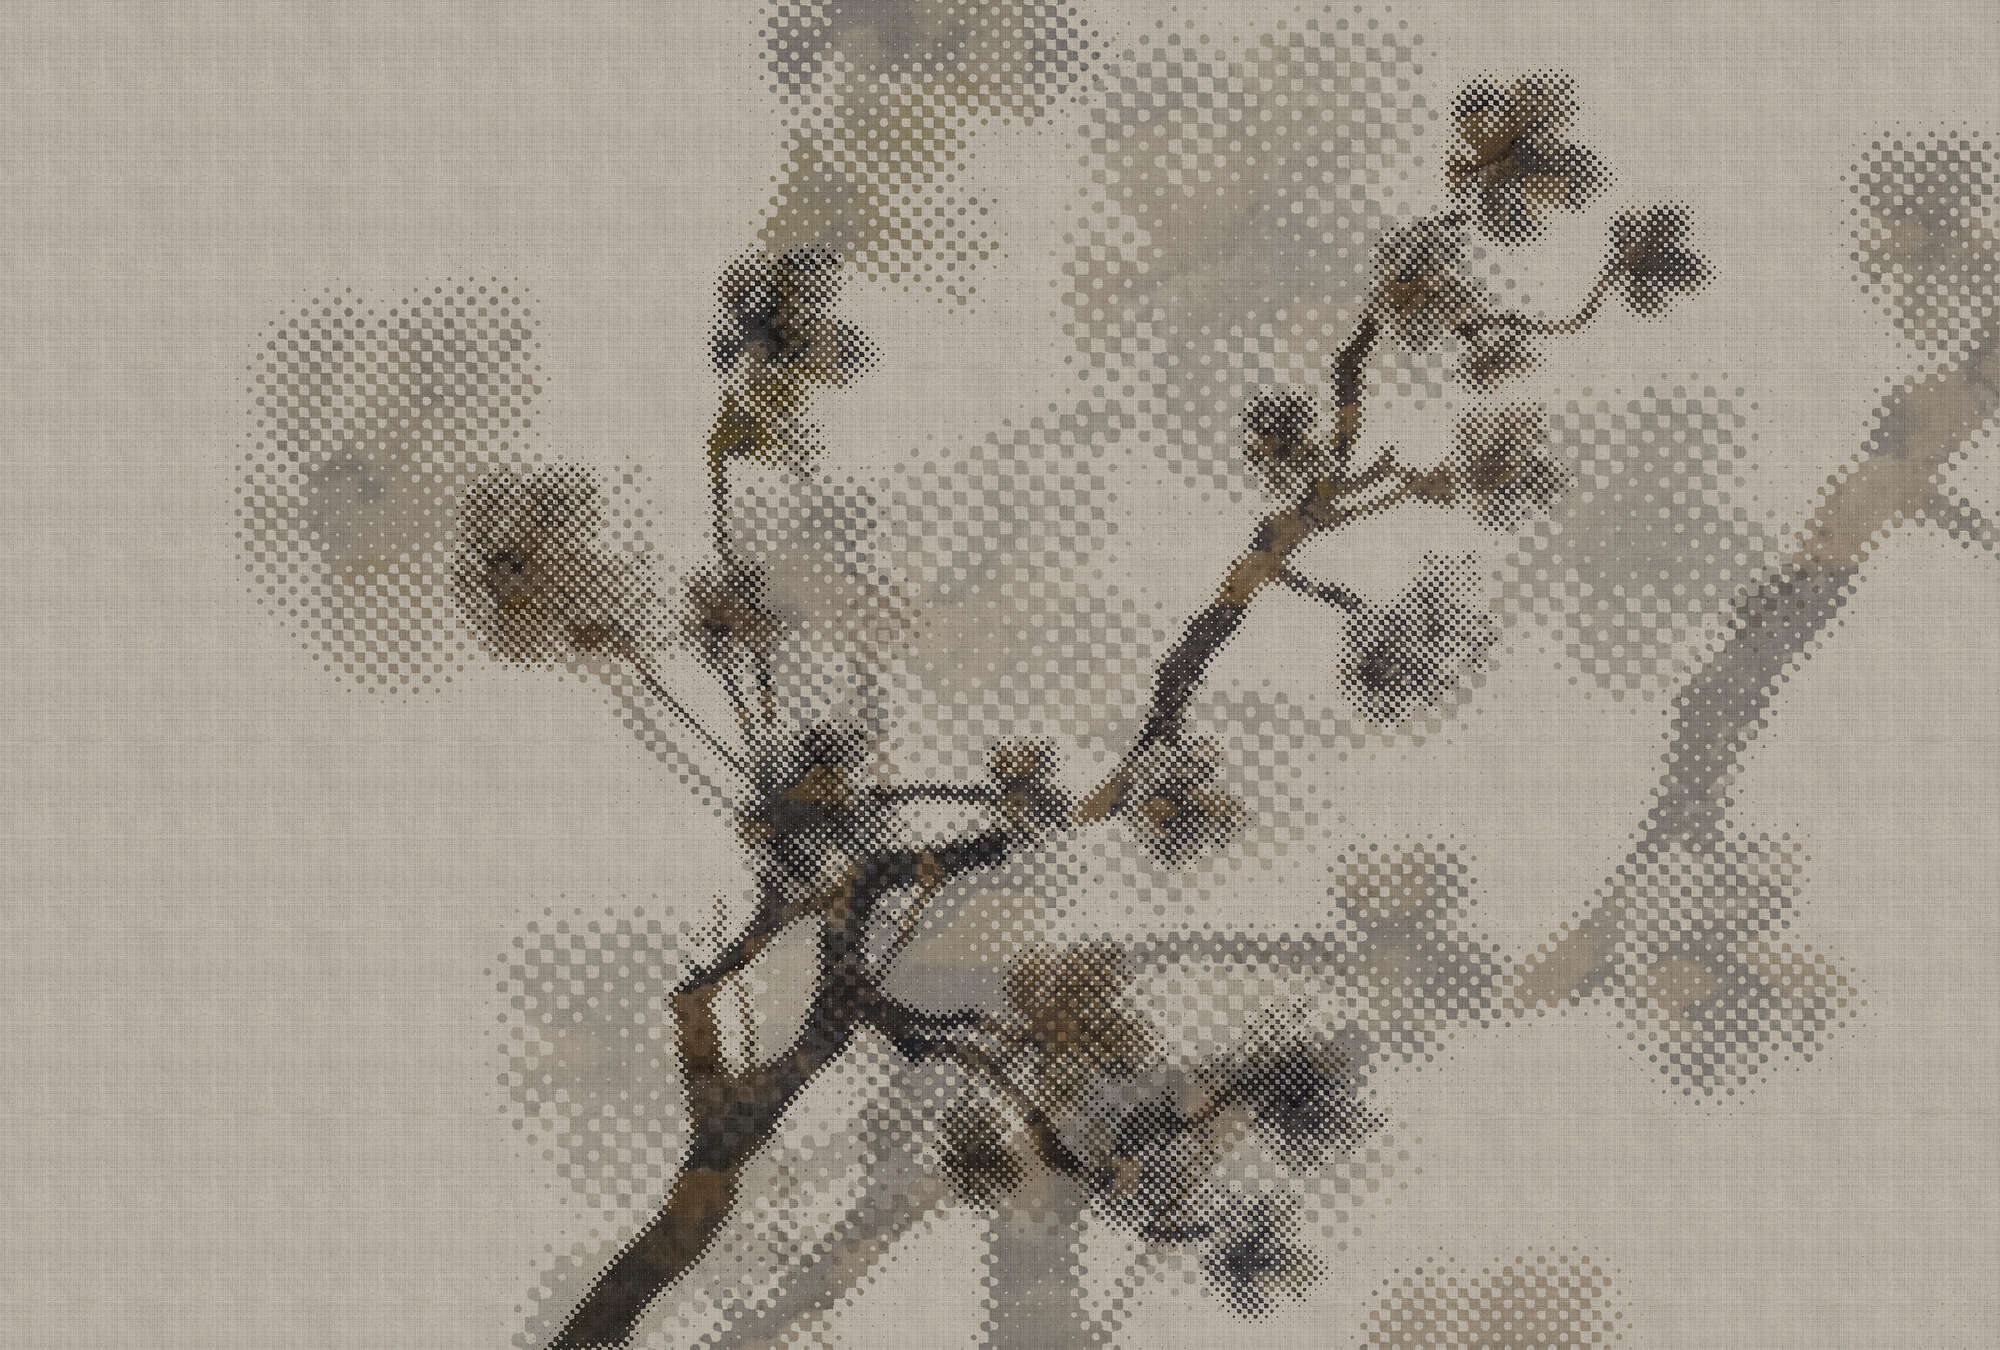             Twigs 1 - Papel pintado fotográfico moderno con motivo natural en estructura de lino natural - Topo | Tela no tejida lisa de alta calidad
        